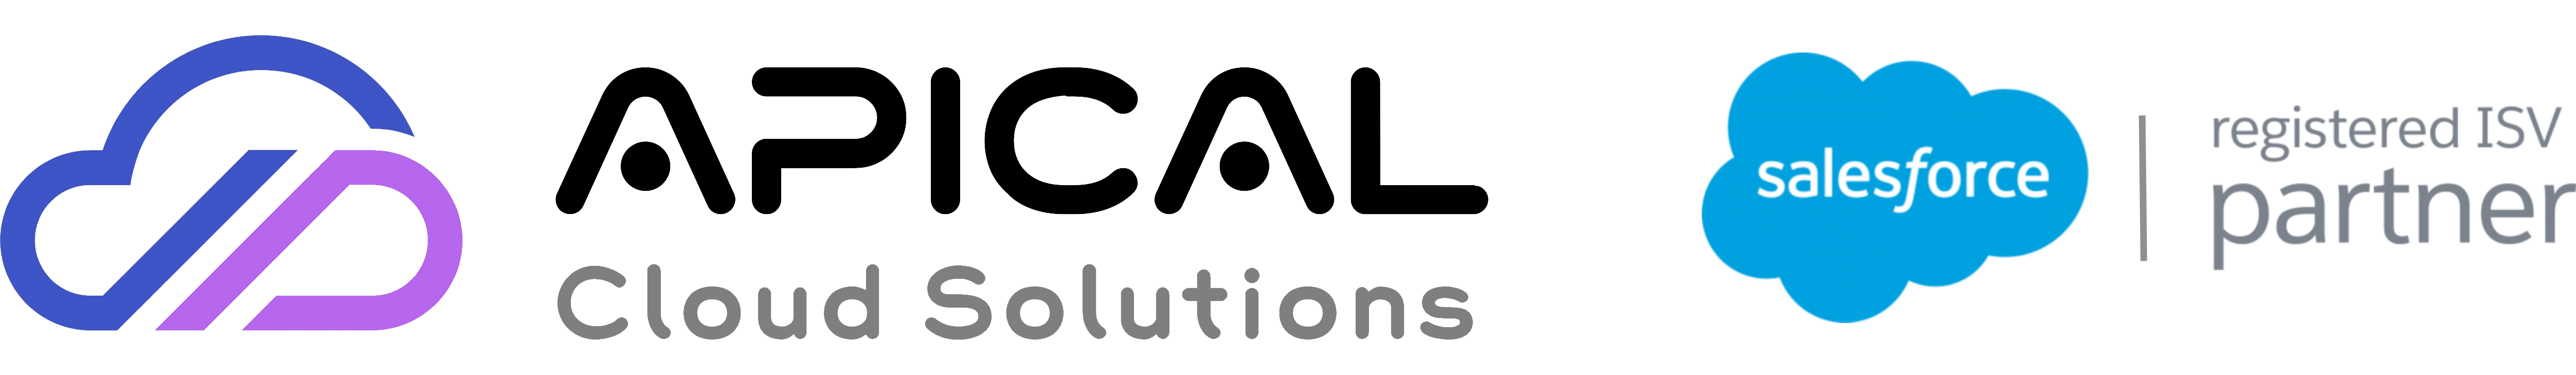 Apical Cloud Solutions Ltd.